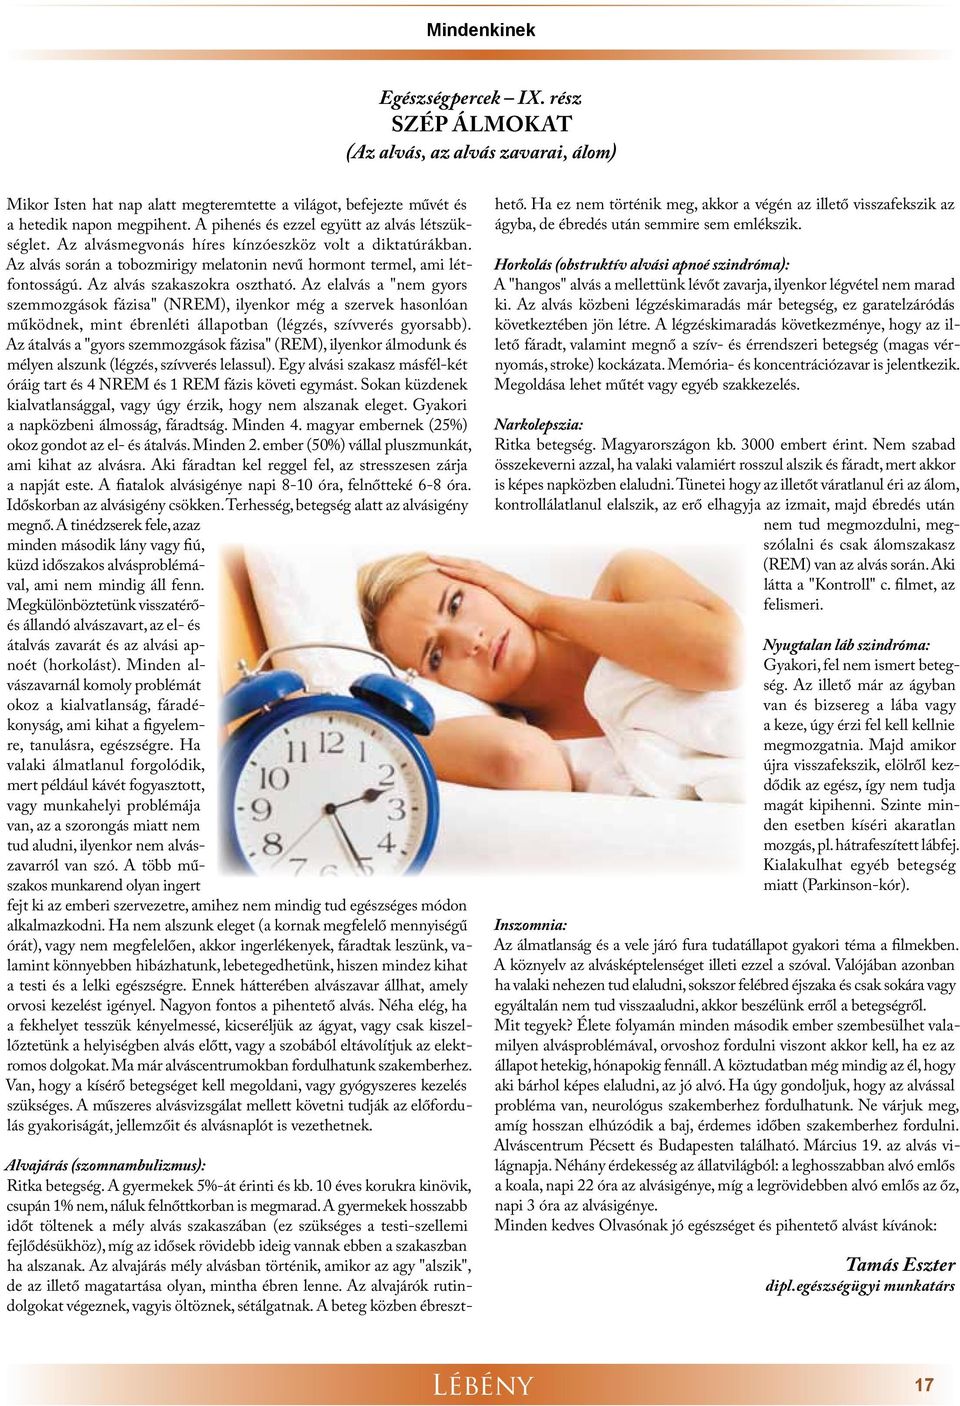 Az alvás szakaszokra osztható. Az elalvás a "nem gyors szemmozgások fázisa" (NREM), ilyenkor még a szervek hasonlóan működnek, mint ébrenléti állapotban (légzés, szívverés gyorsabb).